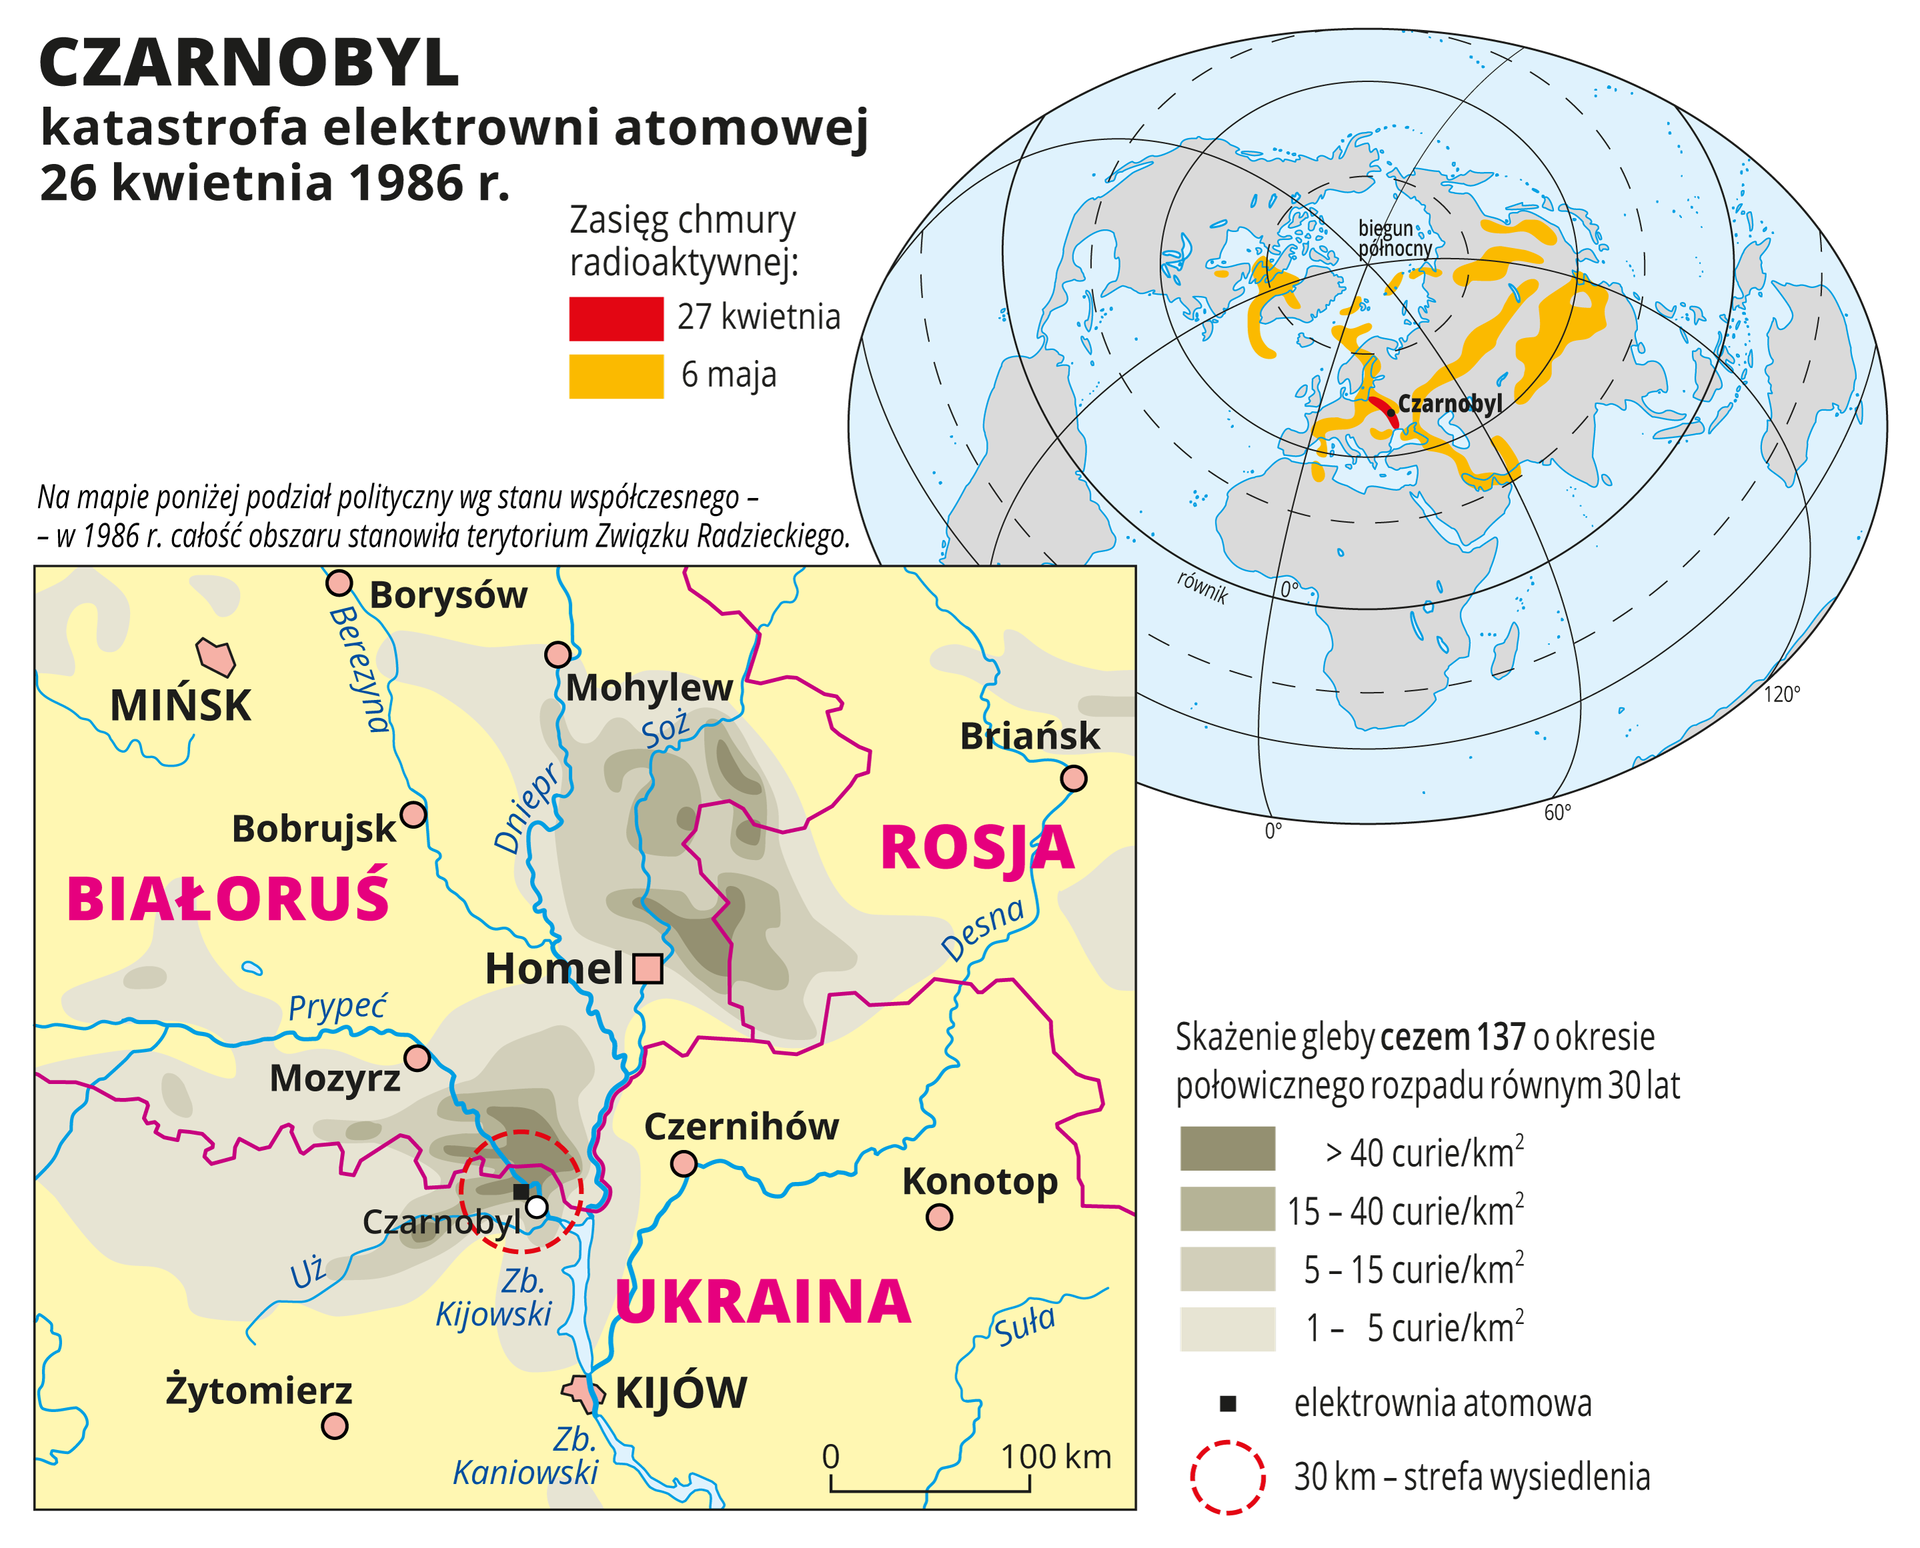 Ilustracja zawiera mapę okolic Czarnobyla na Ukrainie z zaznaczonym kolorowymi plamami skażeniem gleby cezem 137. Od najciemniejszego w Czarnobylu do najjaśniejszego w promieniu trzystu kilometrów od miejsca katastrofy. Na drugiej mapie – mapie świata – zasięg chmury radioaktywnej w dniu wybuchu – w okolicach Czarnobyla i dziesięć dni później – północna, środkowa i wschodnia Azja oraz Grenlandia i północne krańce Ameryki Północnej.